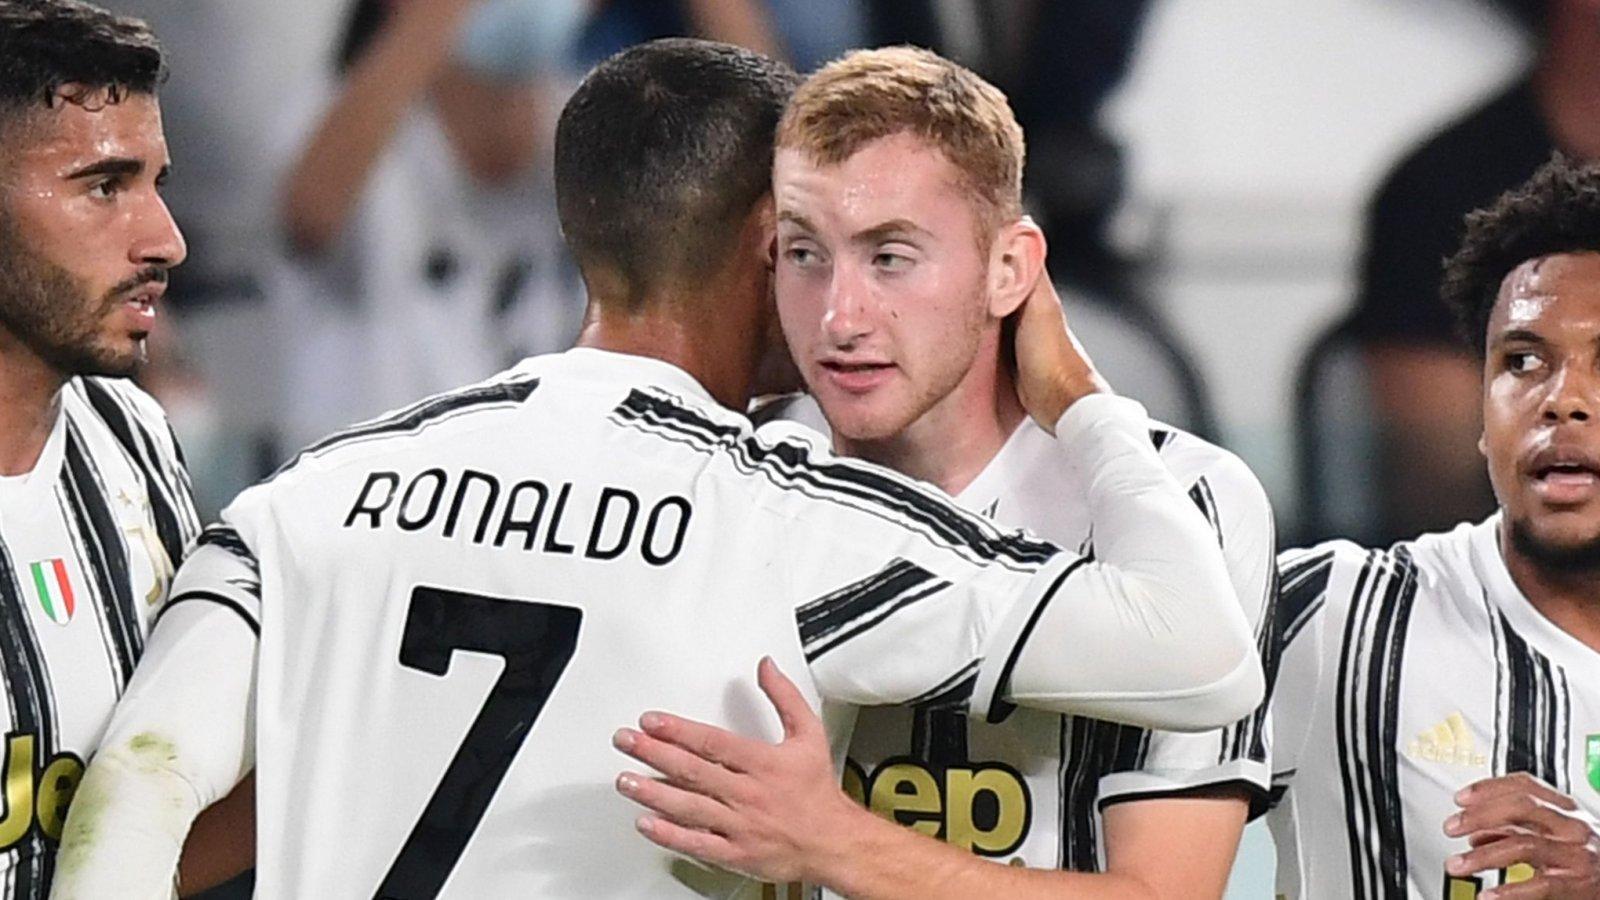 Zvijezda Juventusa po uzoru na Zlatana, slavlje uz pjesmu "Jutro je"